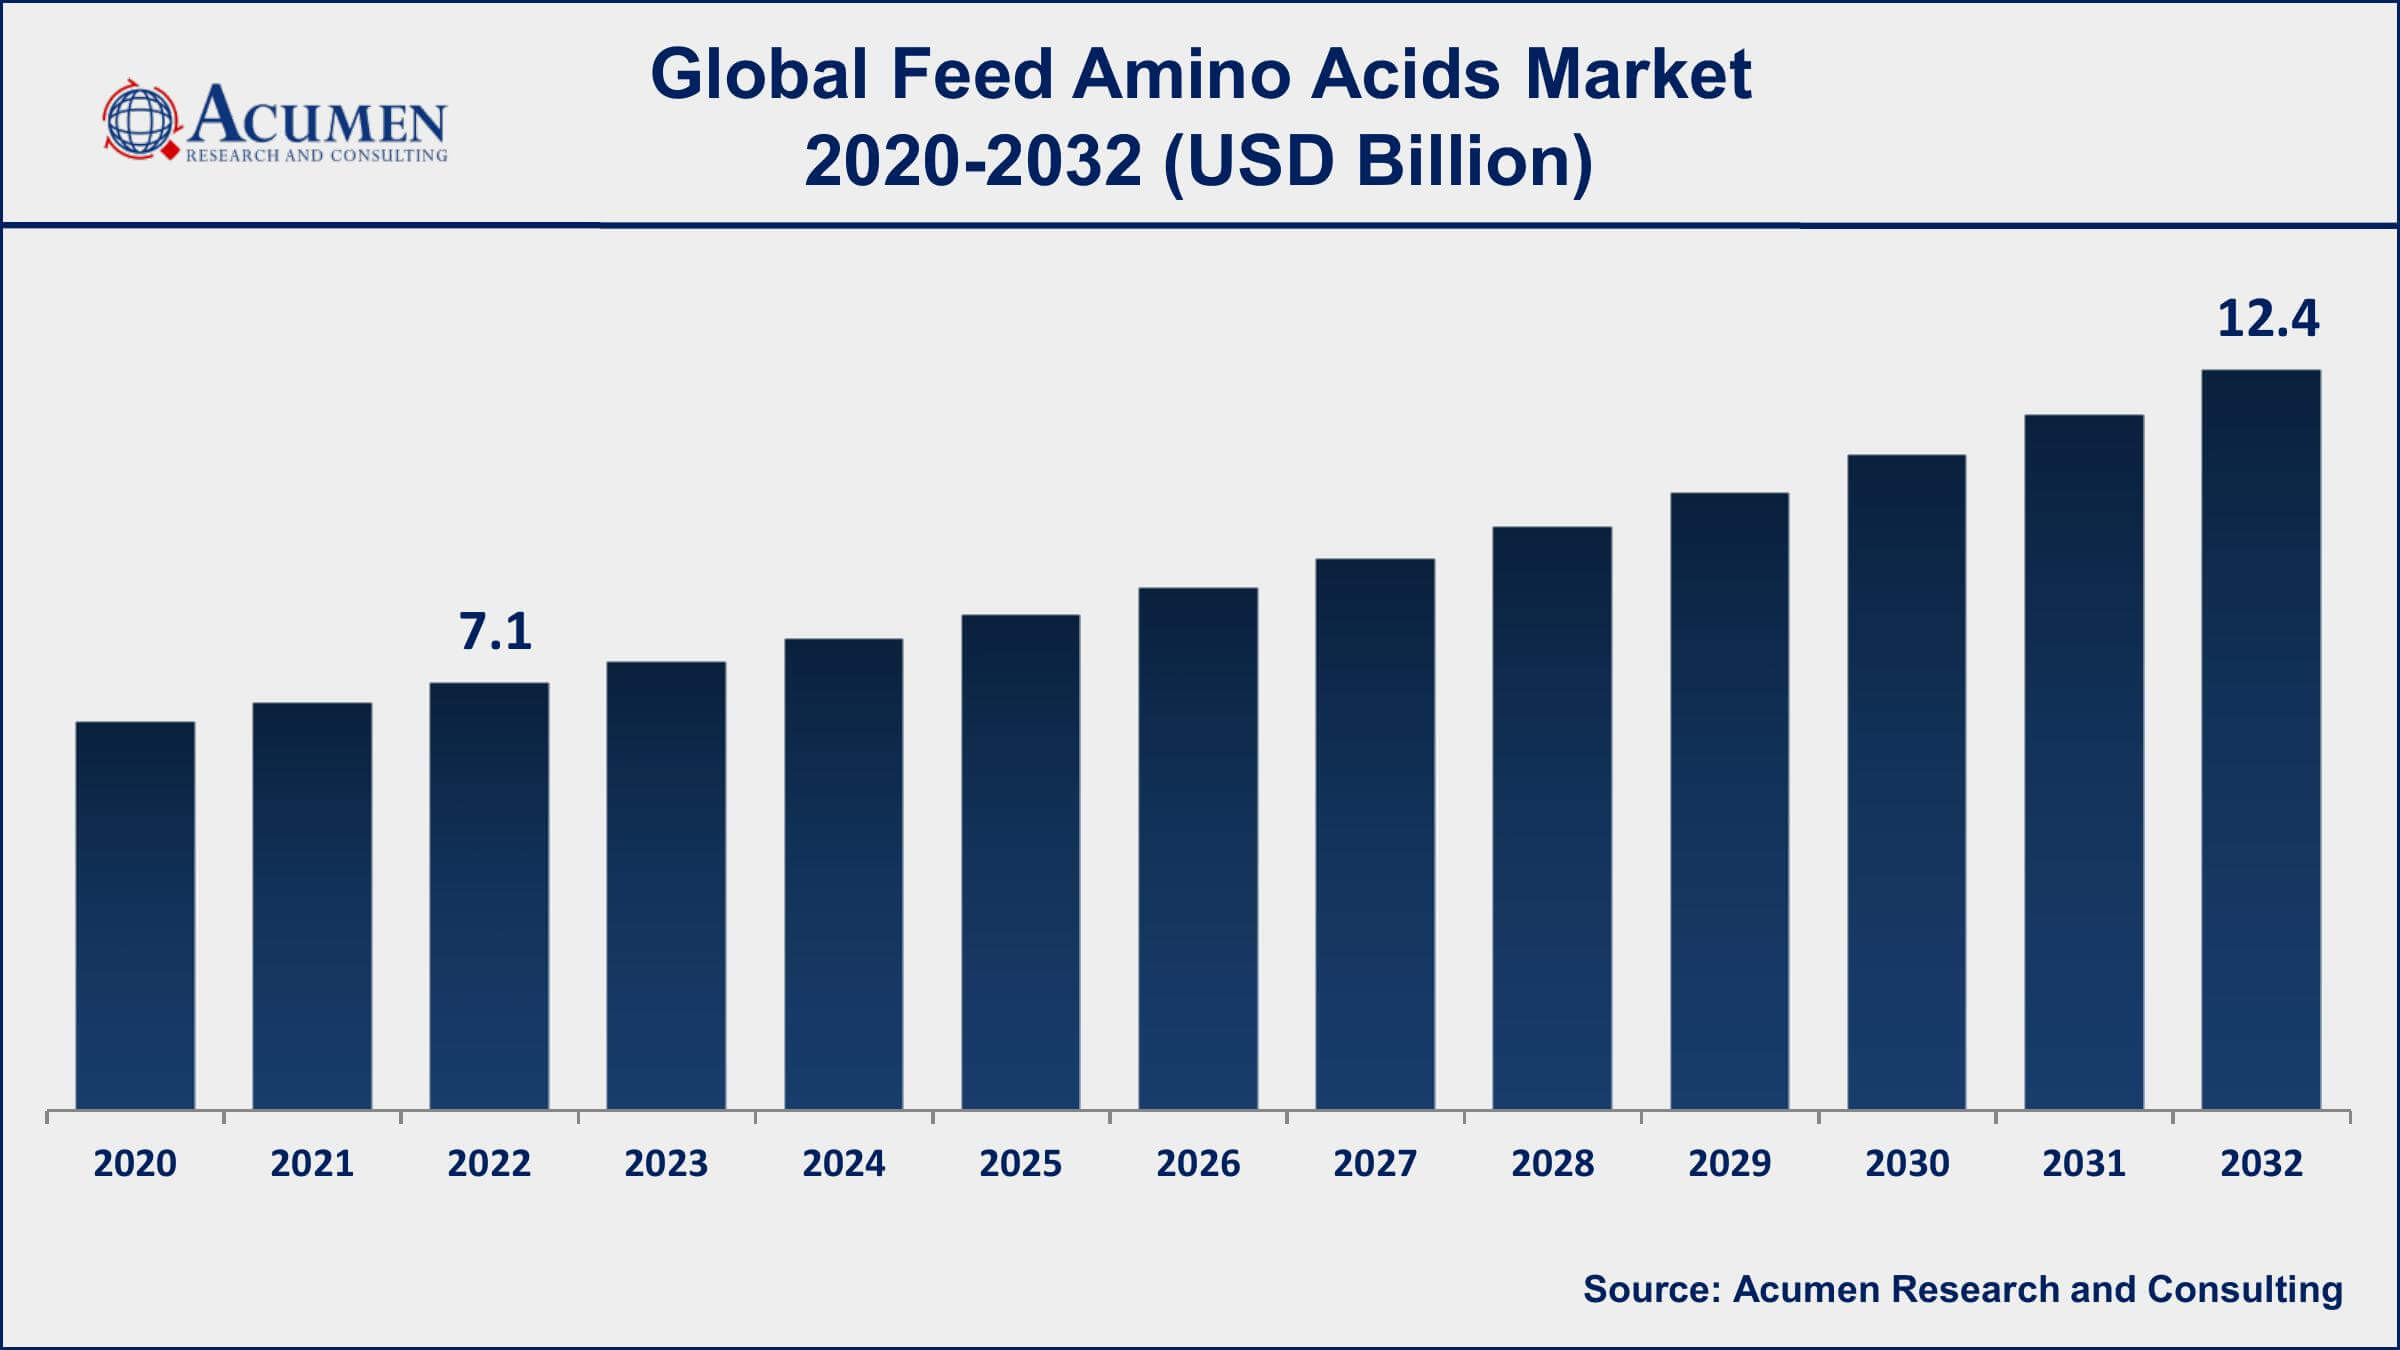 Feed Amino Acids Market Dynamics